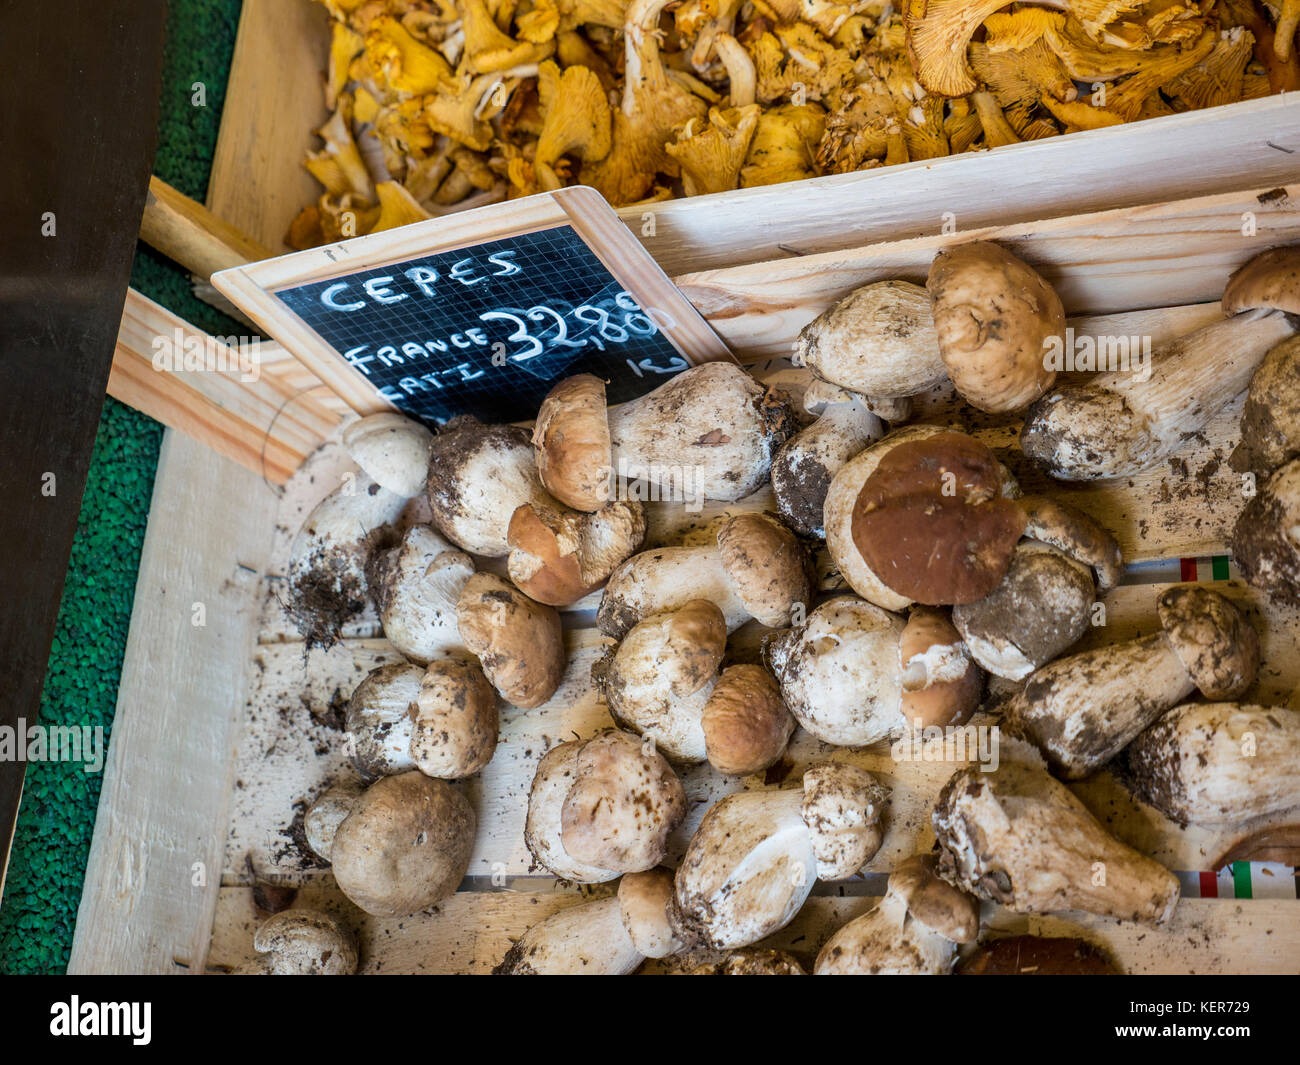 Funghi cespi francesi CEPES PORCINI in vendita nella bancarella del mercato agricolo, in cassa rustica di legno con etichetta di prezzo della lavagna Bretagna Francia Foto Stock